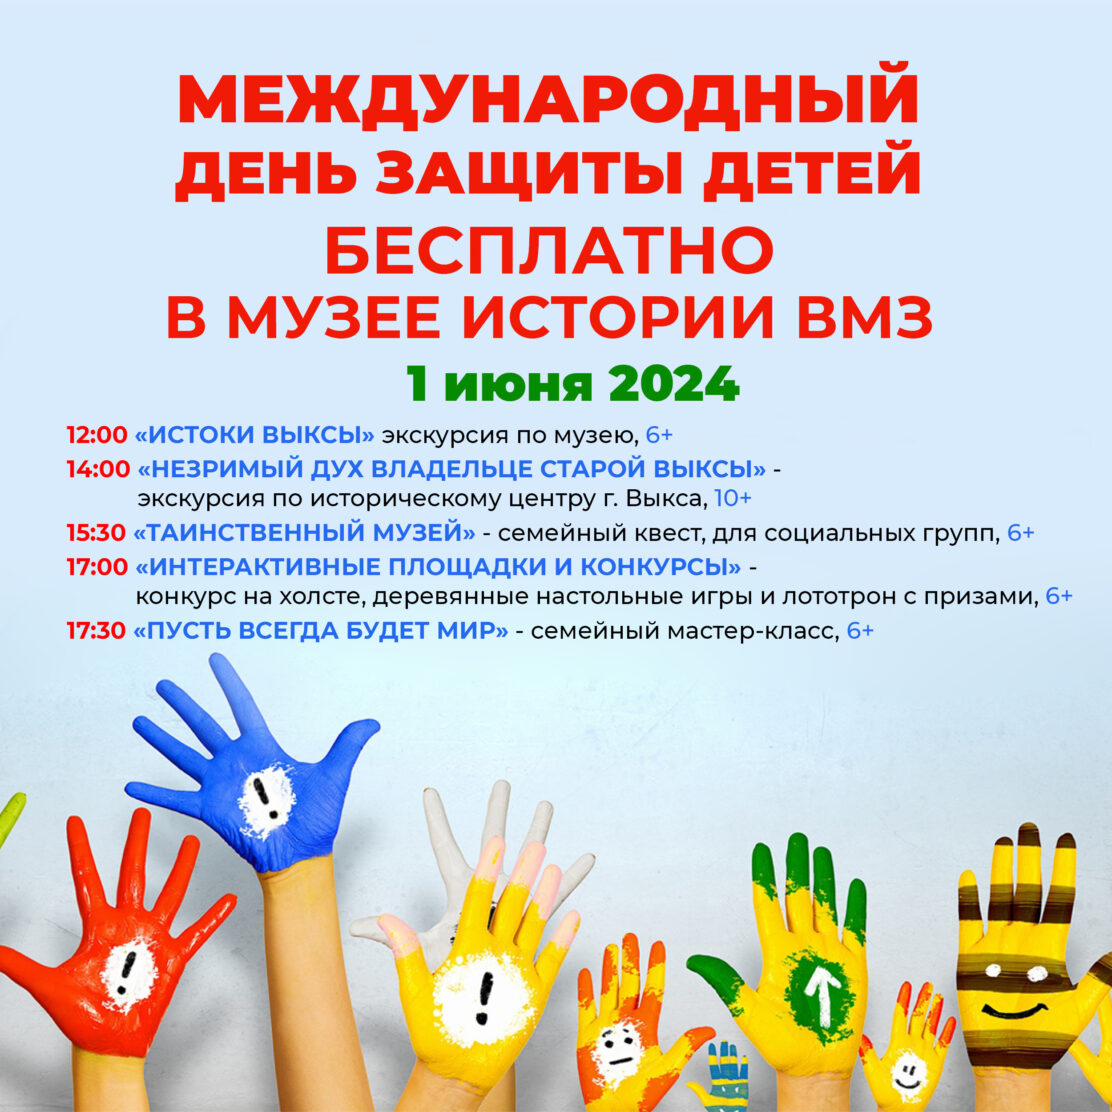 Музей истории приглашает на Международный День защиты детей